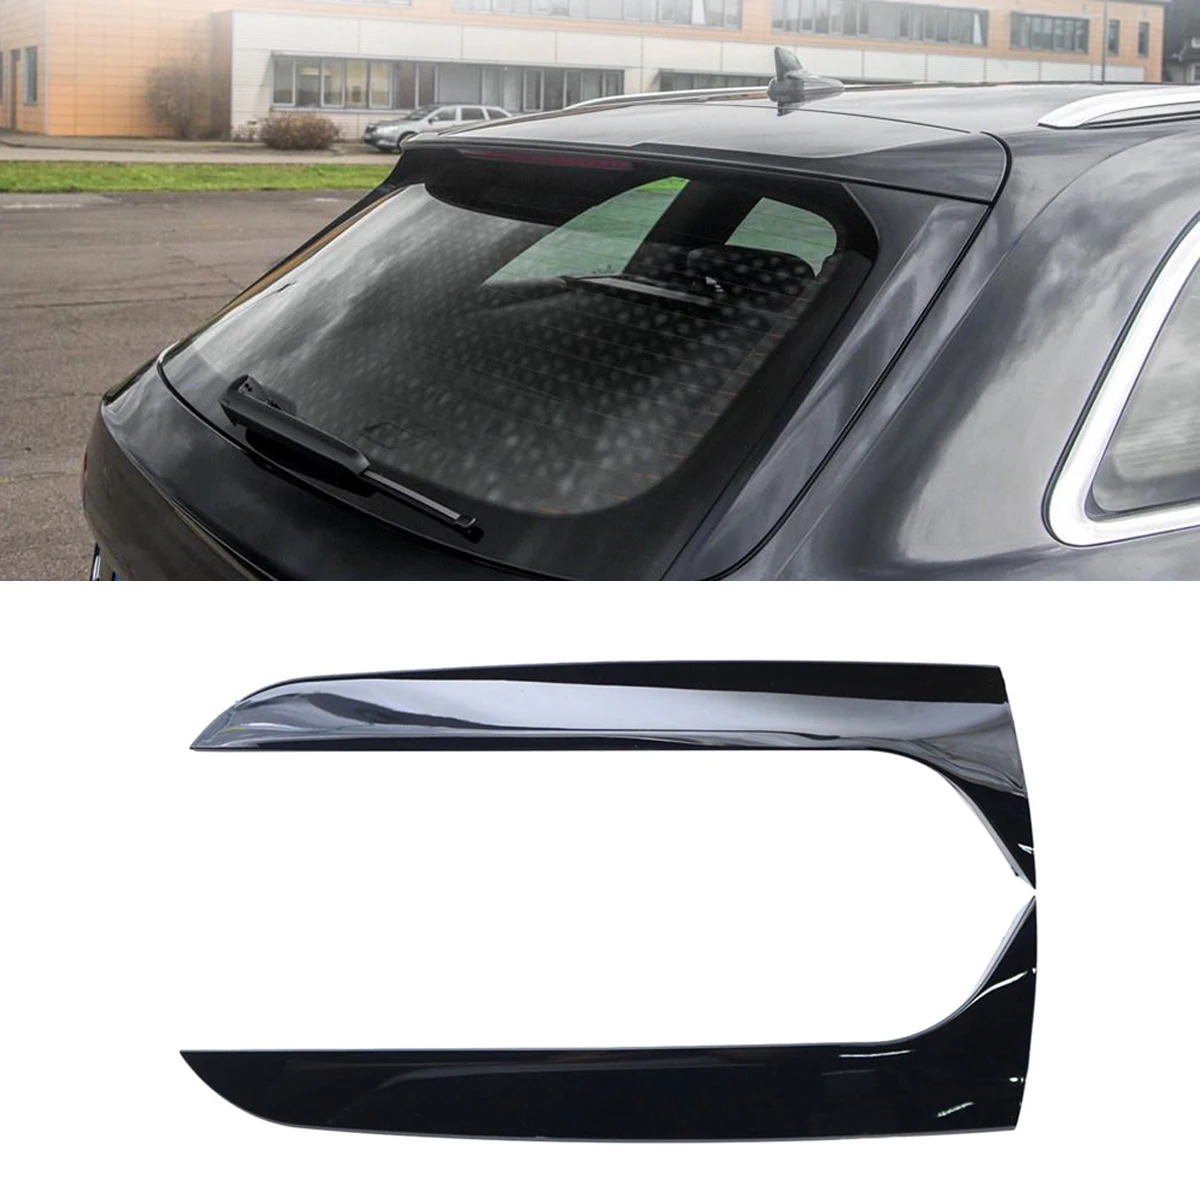 Alerón lateral para ventana trasera de coche, accesorio negro para Audi A4 B8 Edición de viaje Allroad Avant 2009-2016, no para A4, versión de viaje, sinusoidal